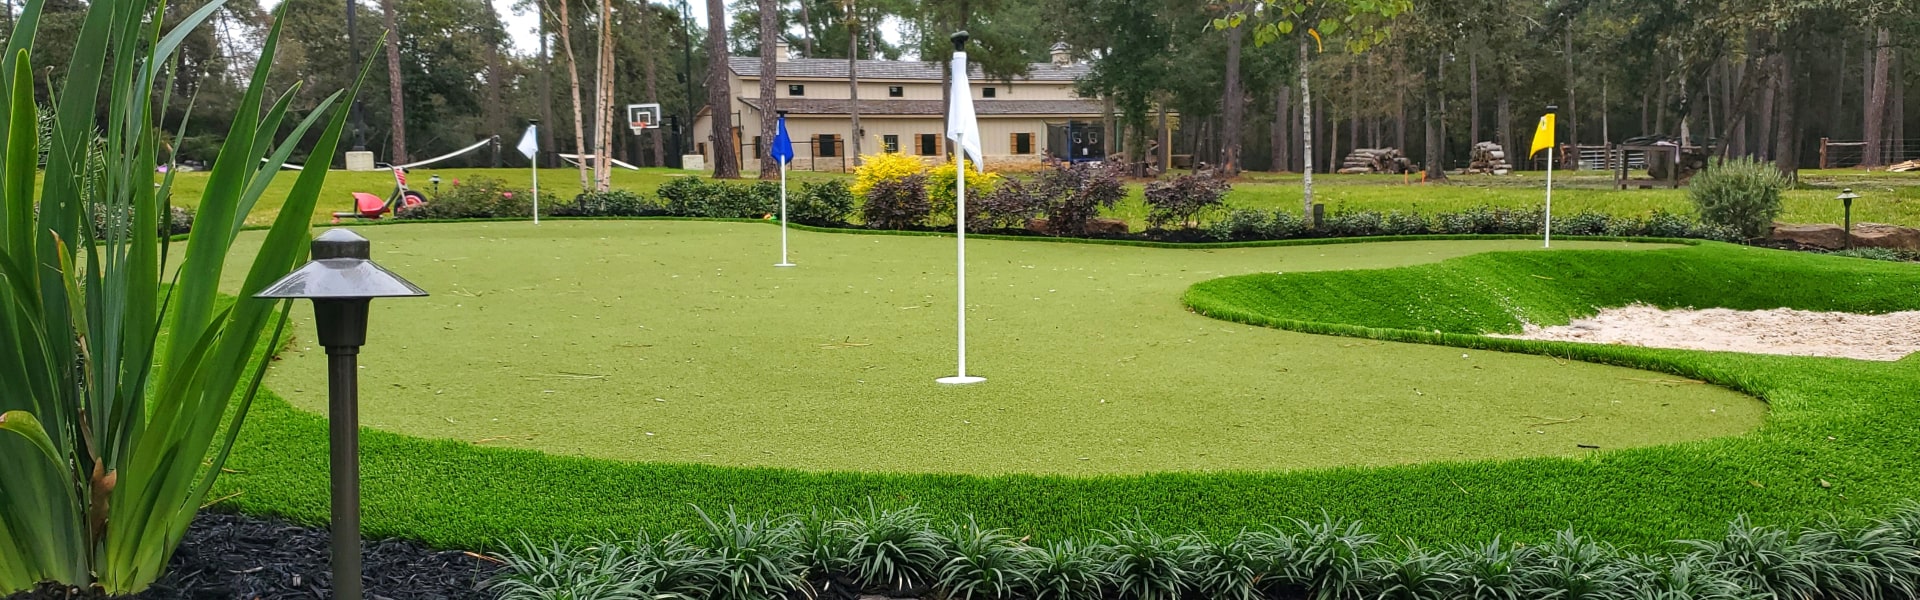 A golf course